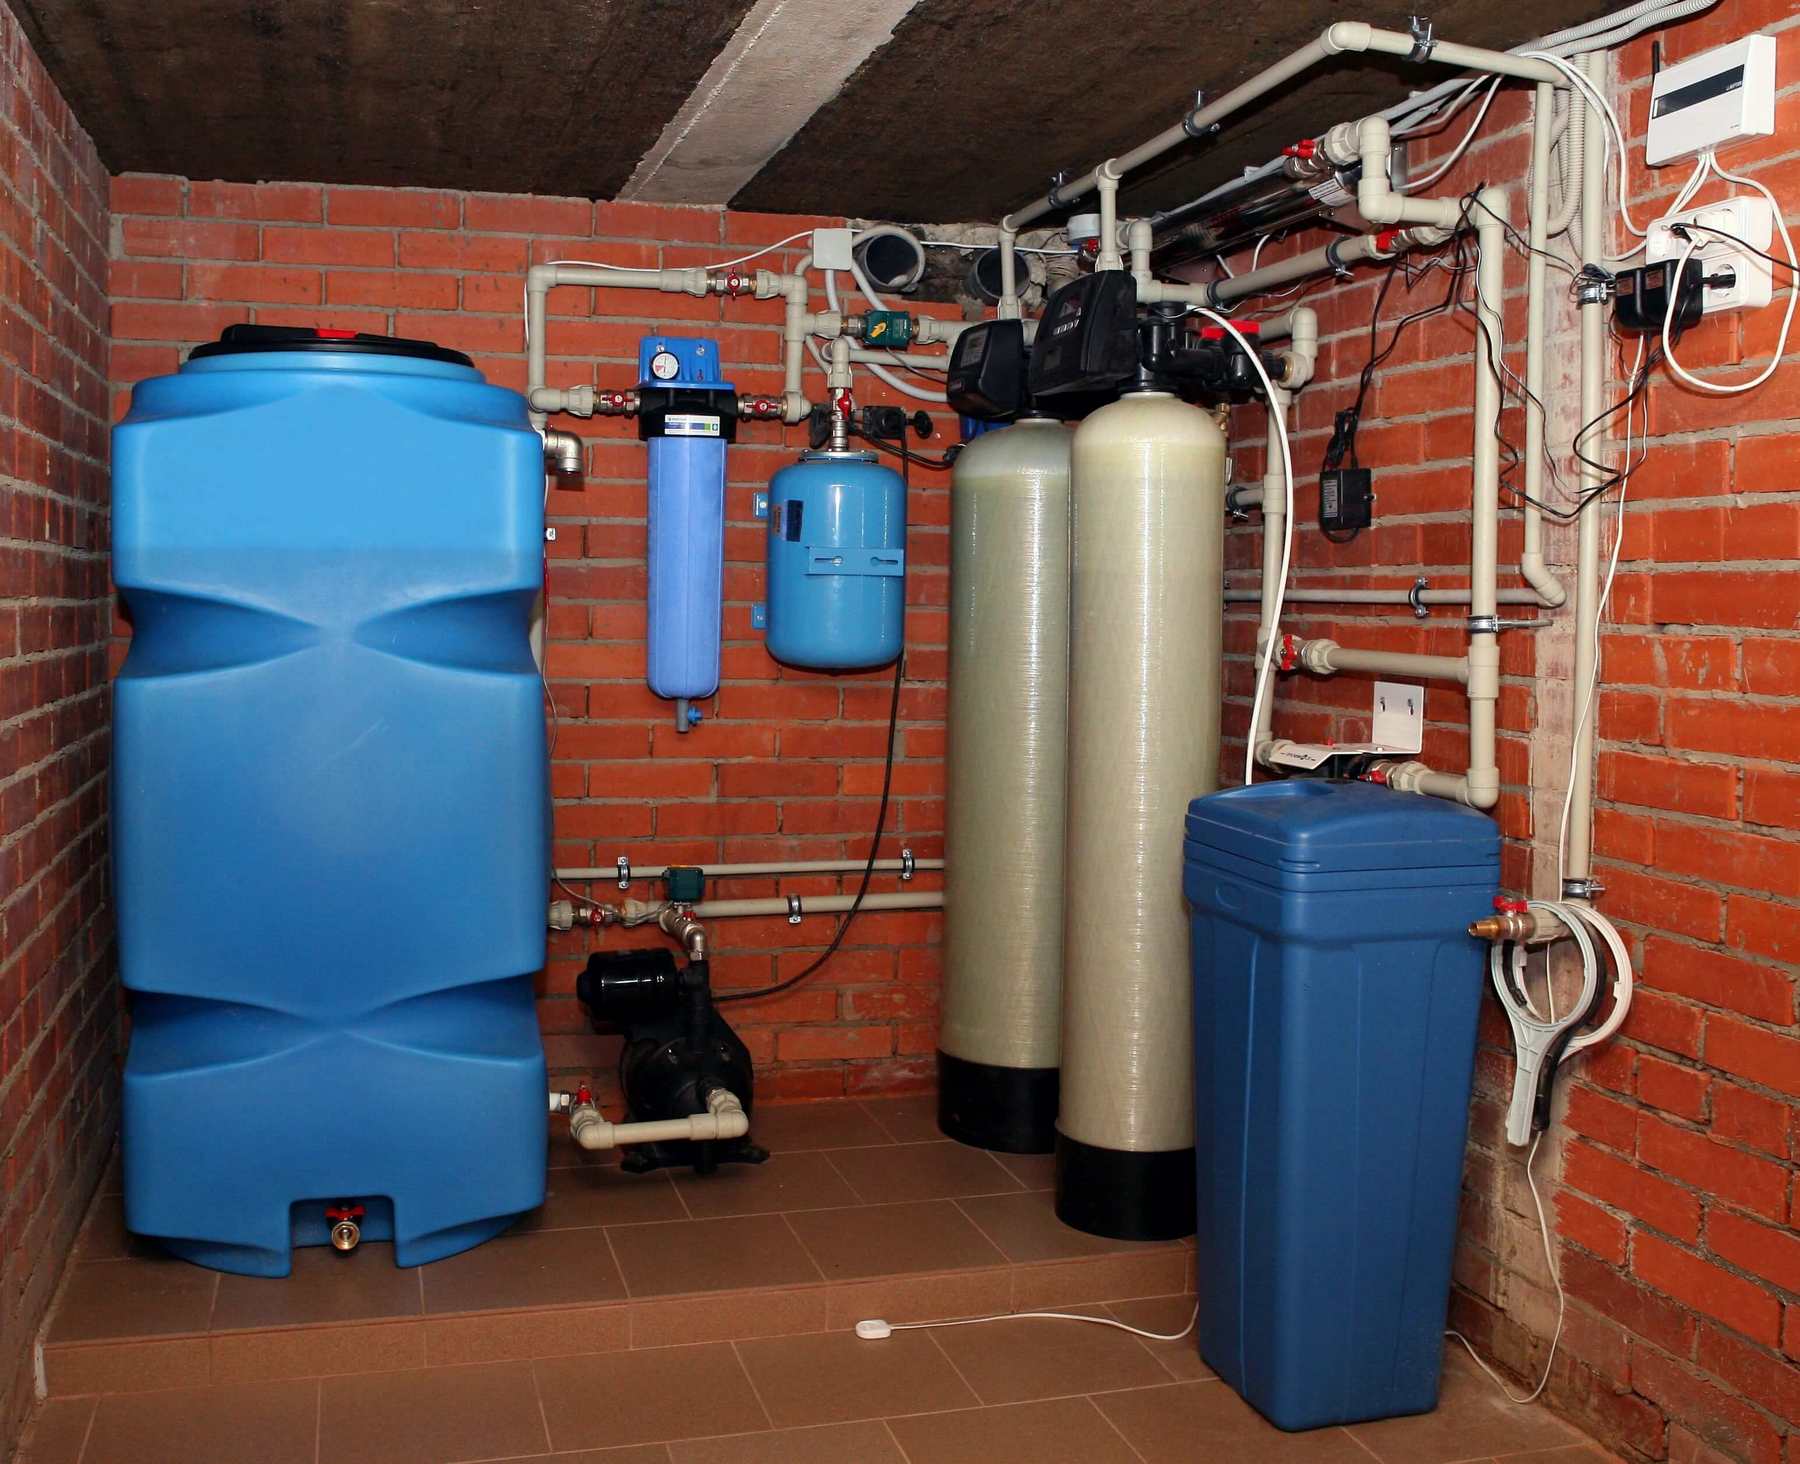 Очистка воды для частного дома – описание устройств